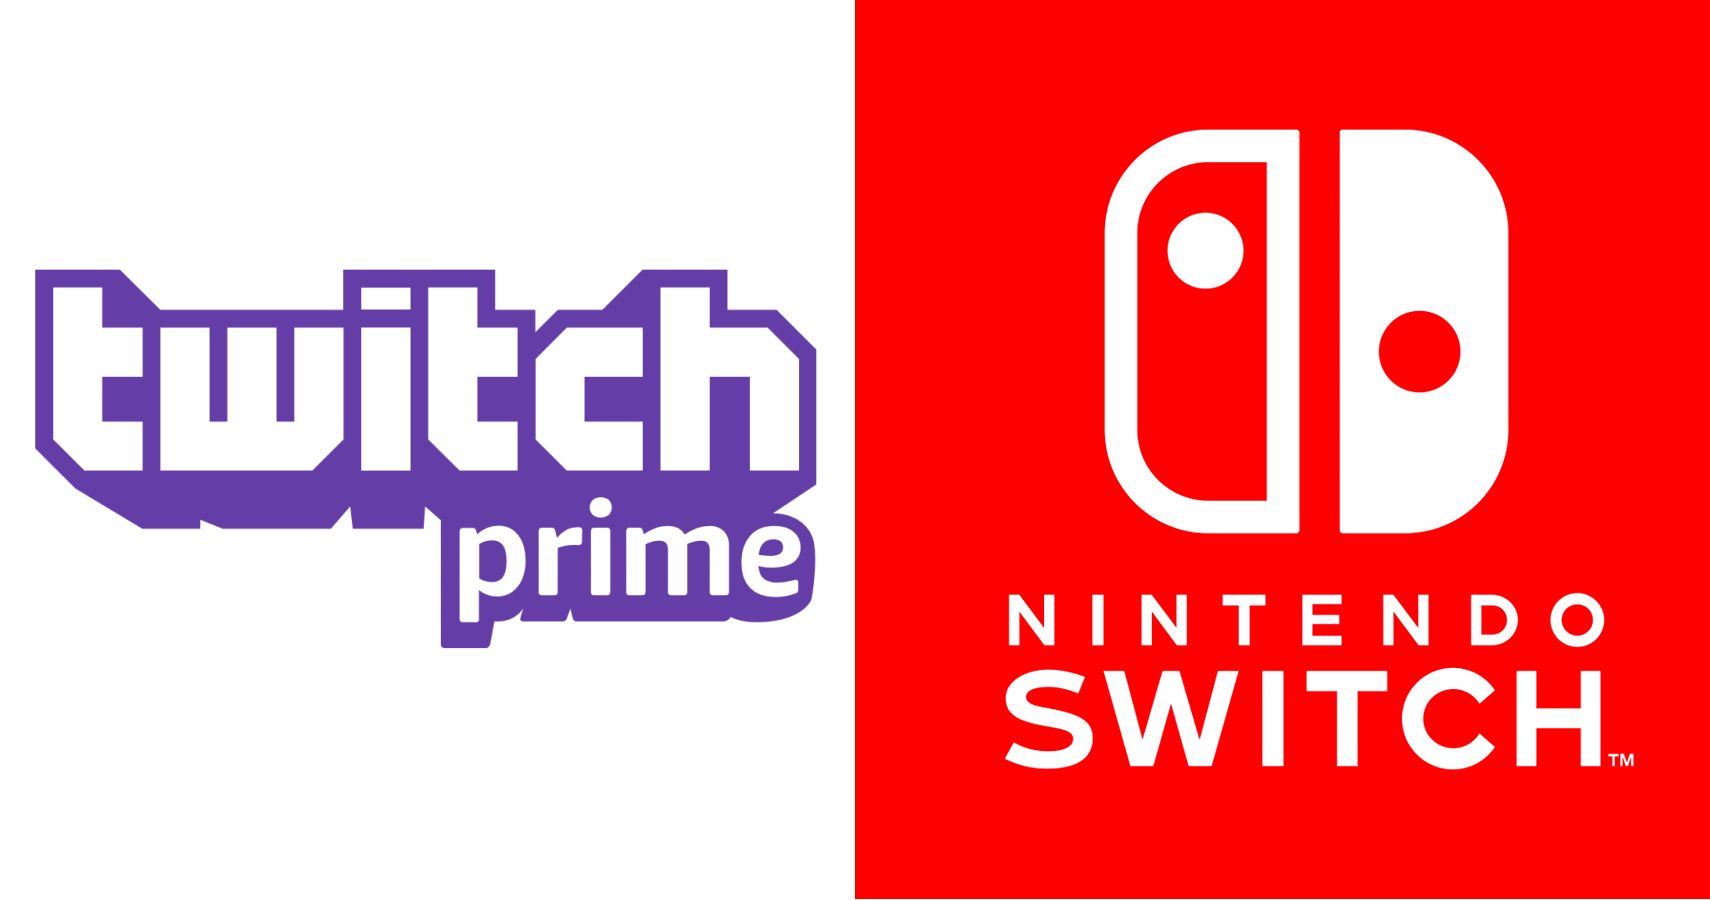 nintendo switch twitch prime